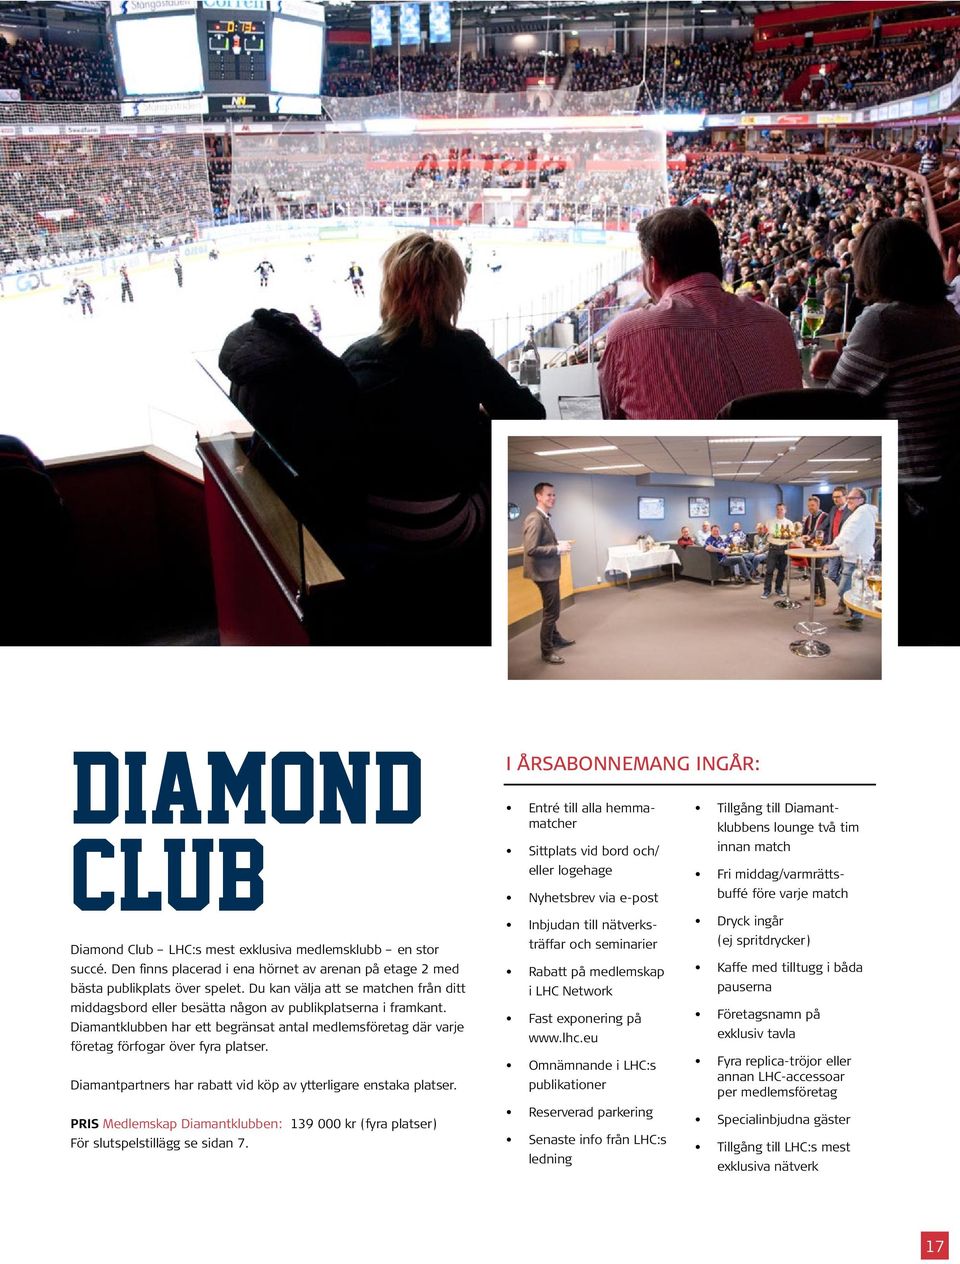 Diamantpartners har rabatt vid köp av ytterligare enstaka platser. PRIS Medlemskap Diamantklubben: 139 000 kr (fyra platser) För slutspelstillägg se sidan 7.